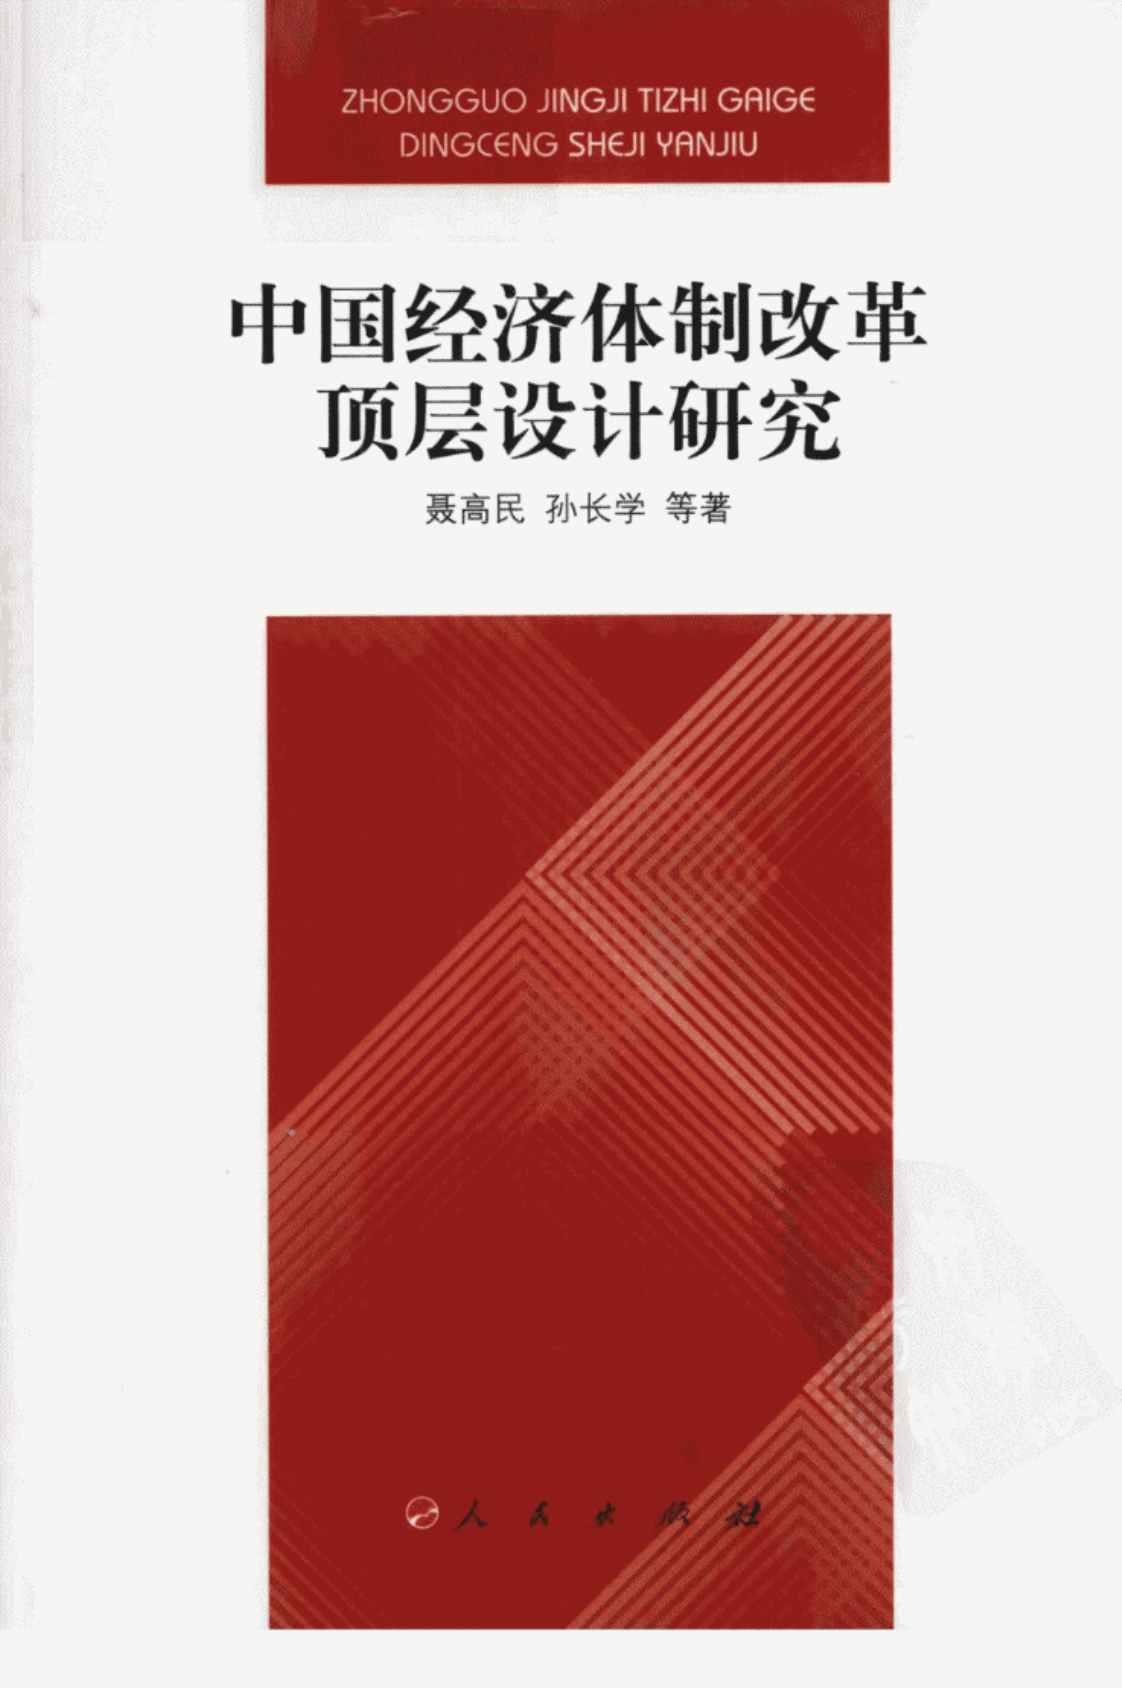 [中国经济体制改革顶层设计研究][聂高民、孙长学(编著)]高清PDF电子书下载